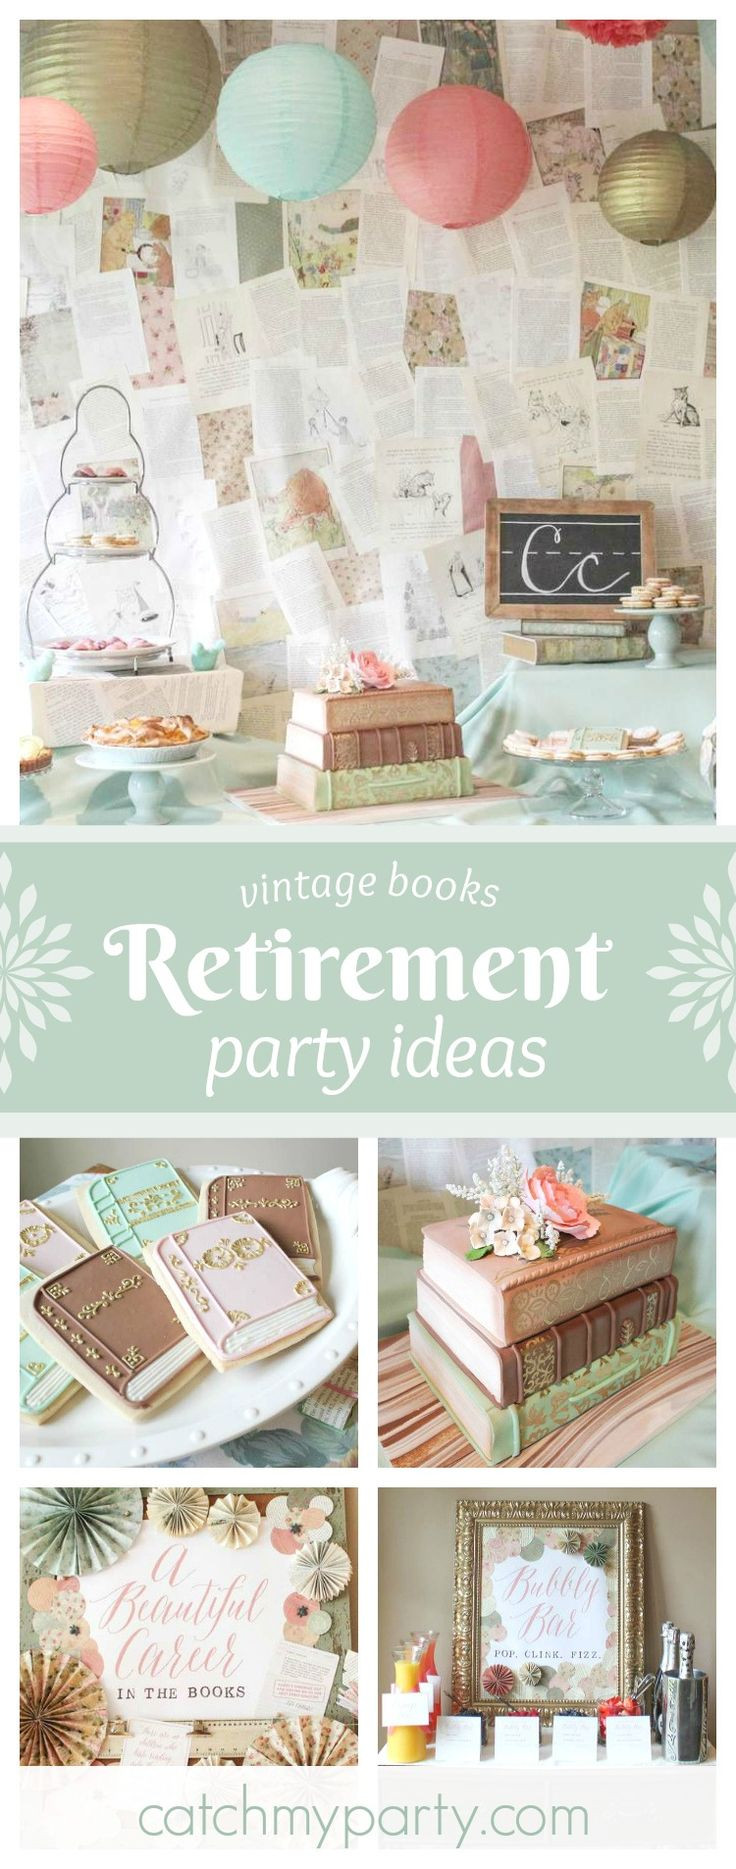 Funny Retirement Party Ideas
 25 unique Retirement parties ideas on Pinterest